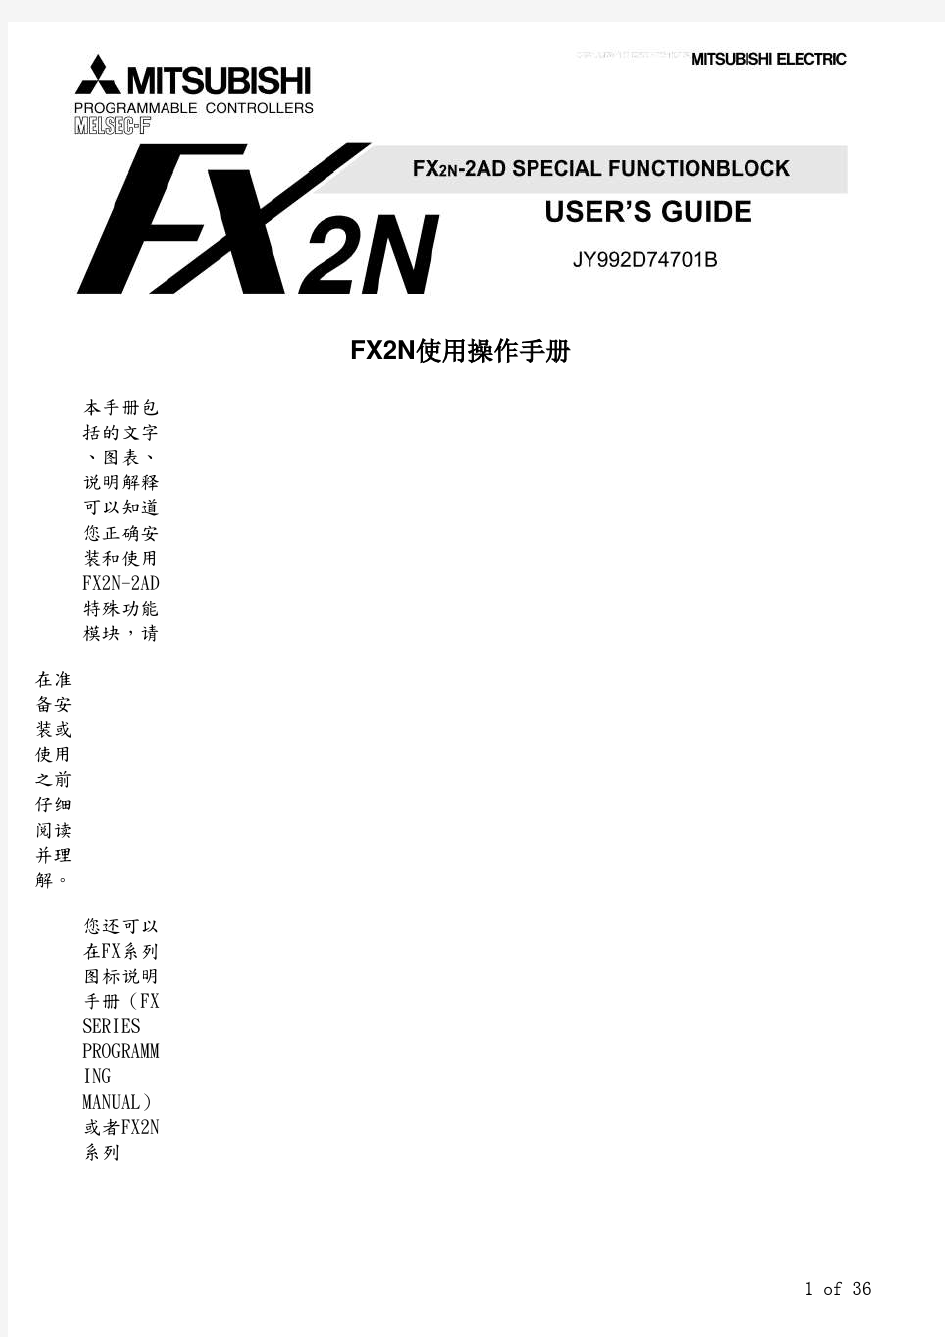 FX2N-2AD模拟量输入模块编程使用手册-中文版